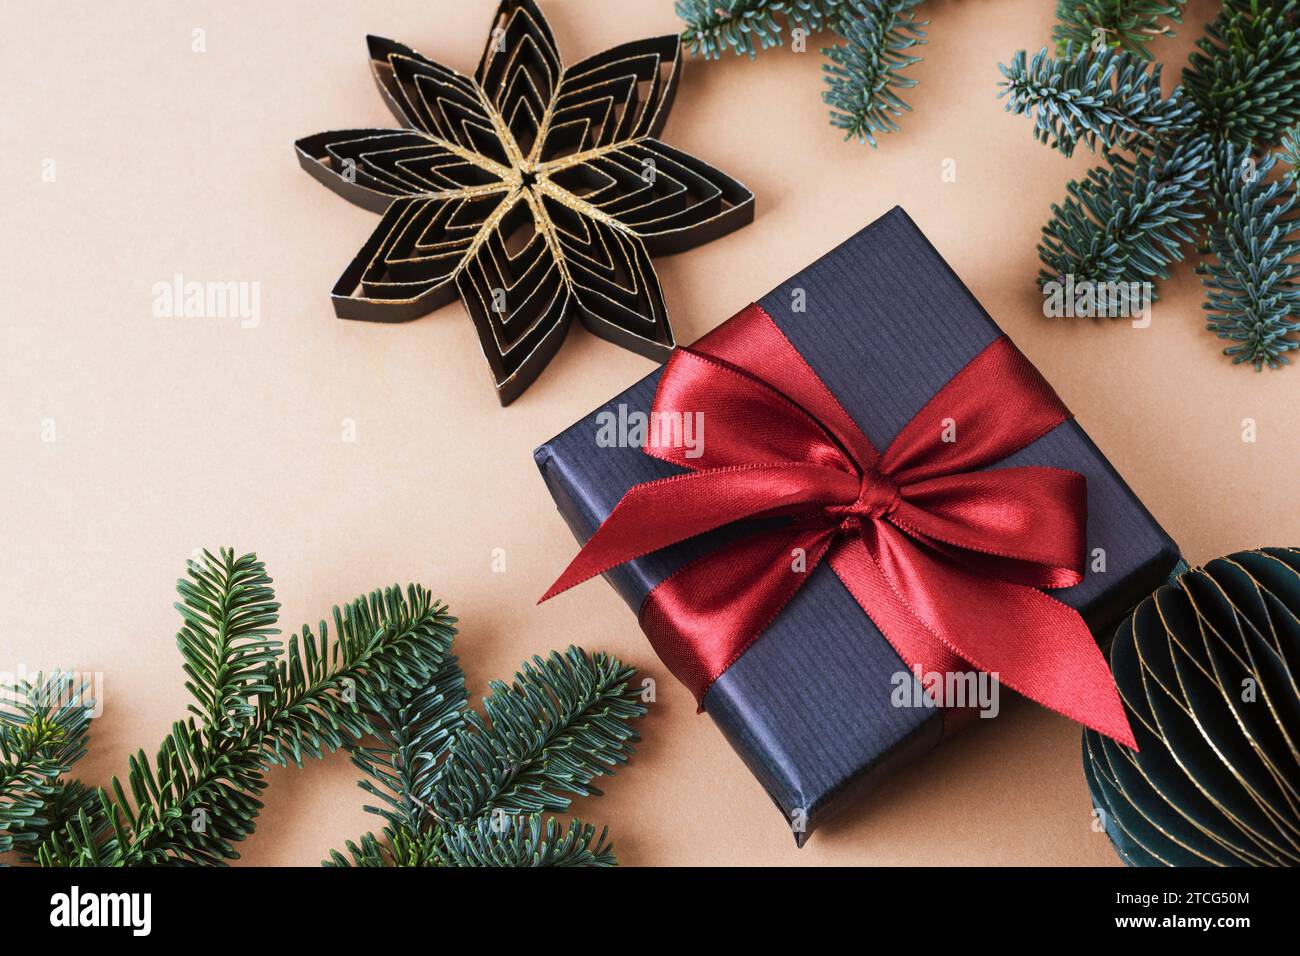 Regalo in scatola nera, bauble di carta e rami di abete su sfondo beige neutro. Concetto di Natale. Vista dall'alto, base piatta. Foto Stock